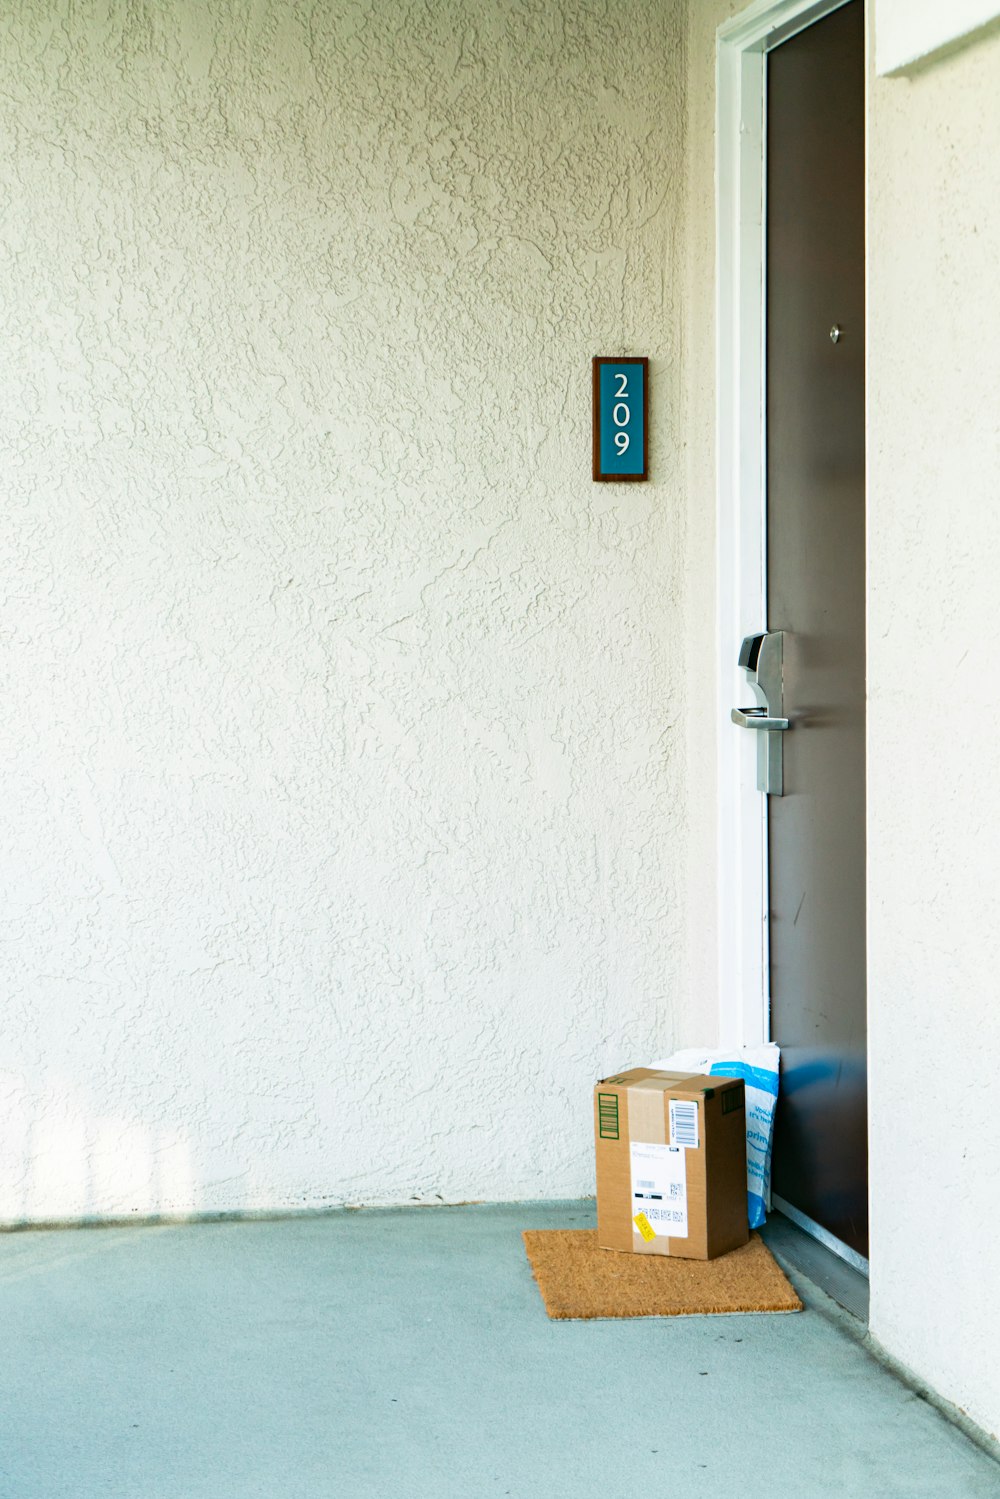 Una caja de cartón sentada frente a una puerta